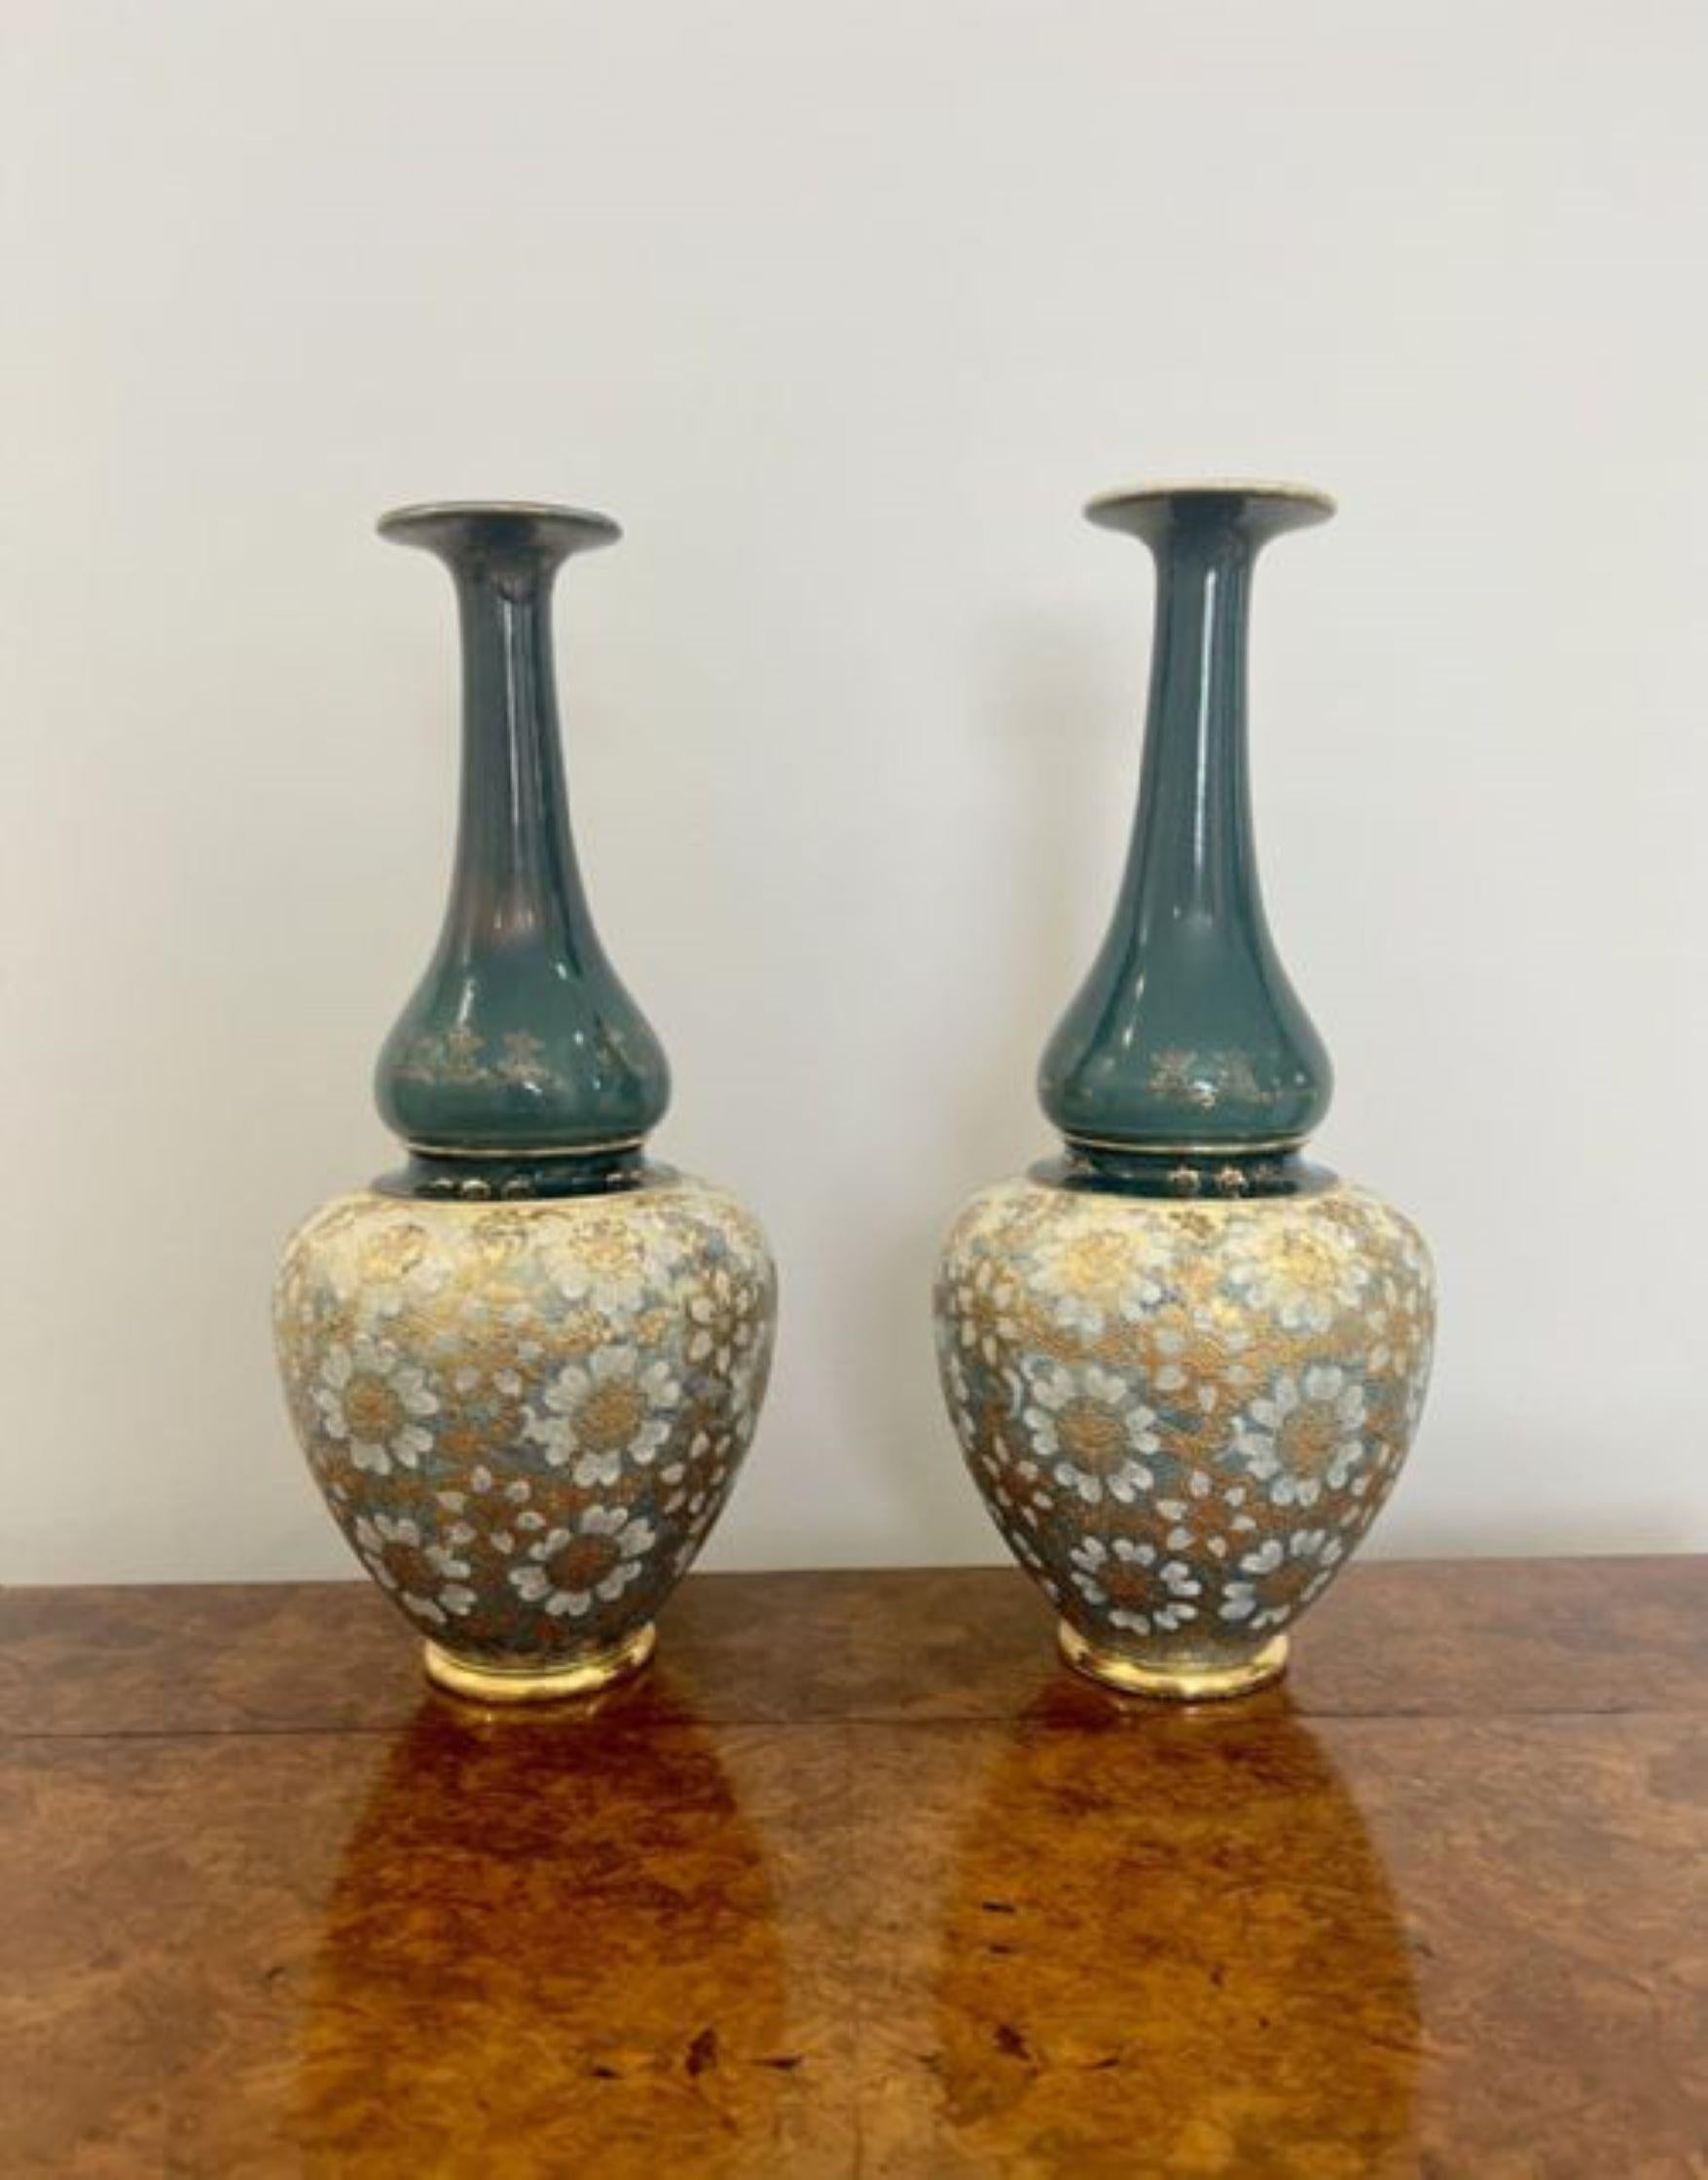 Hochwertiges Paar antiker viktorianischer Royal Doulton Vasen mit großem Ballister. Ein hochwertiges Paar antiker Royal Doulton Vasen in wunderschönen grünen, goldenen und weißen Farben mit Blumendekoration, die auf runden vergoldeten Sockeln